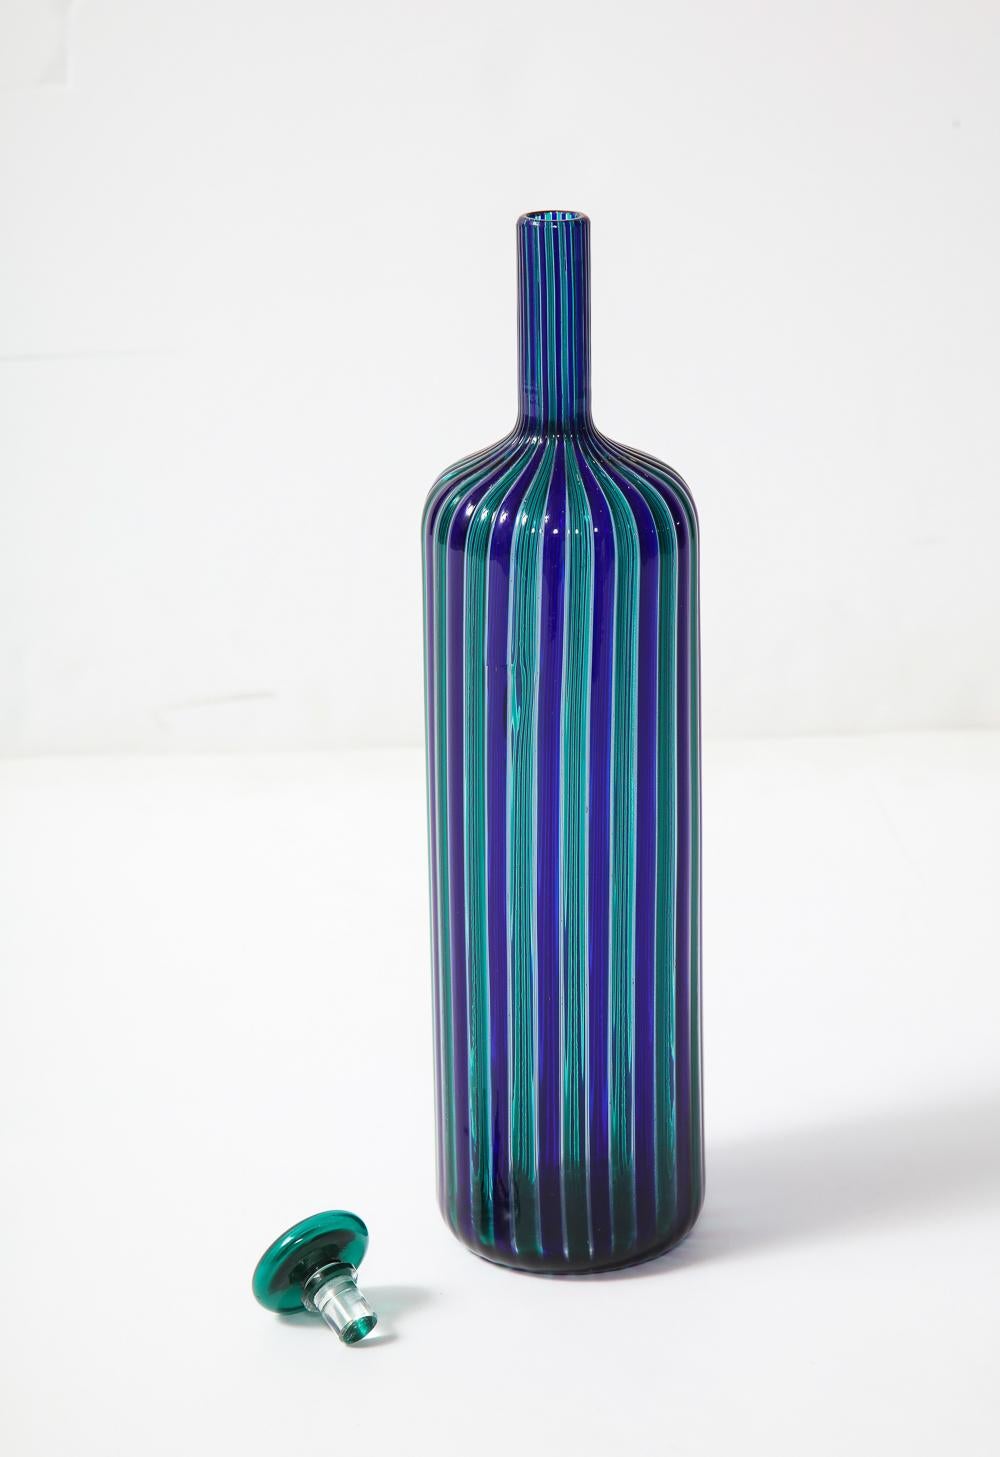 Geblasene Glasflaschenform mit blauen und grünen Stöcken.